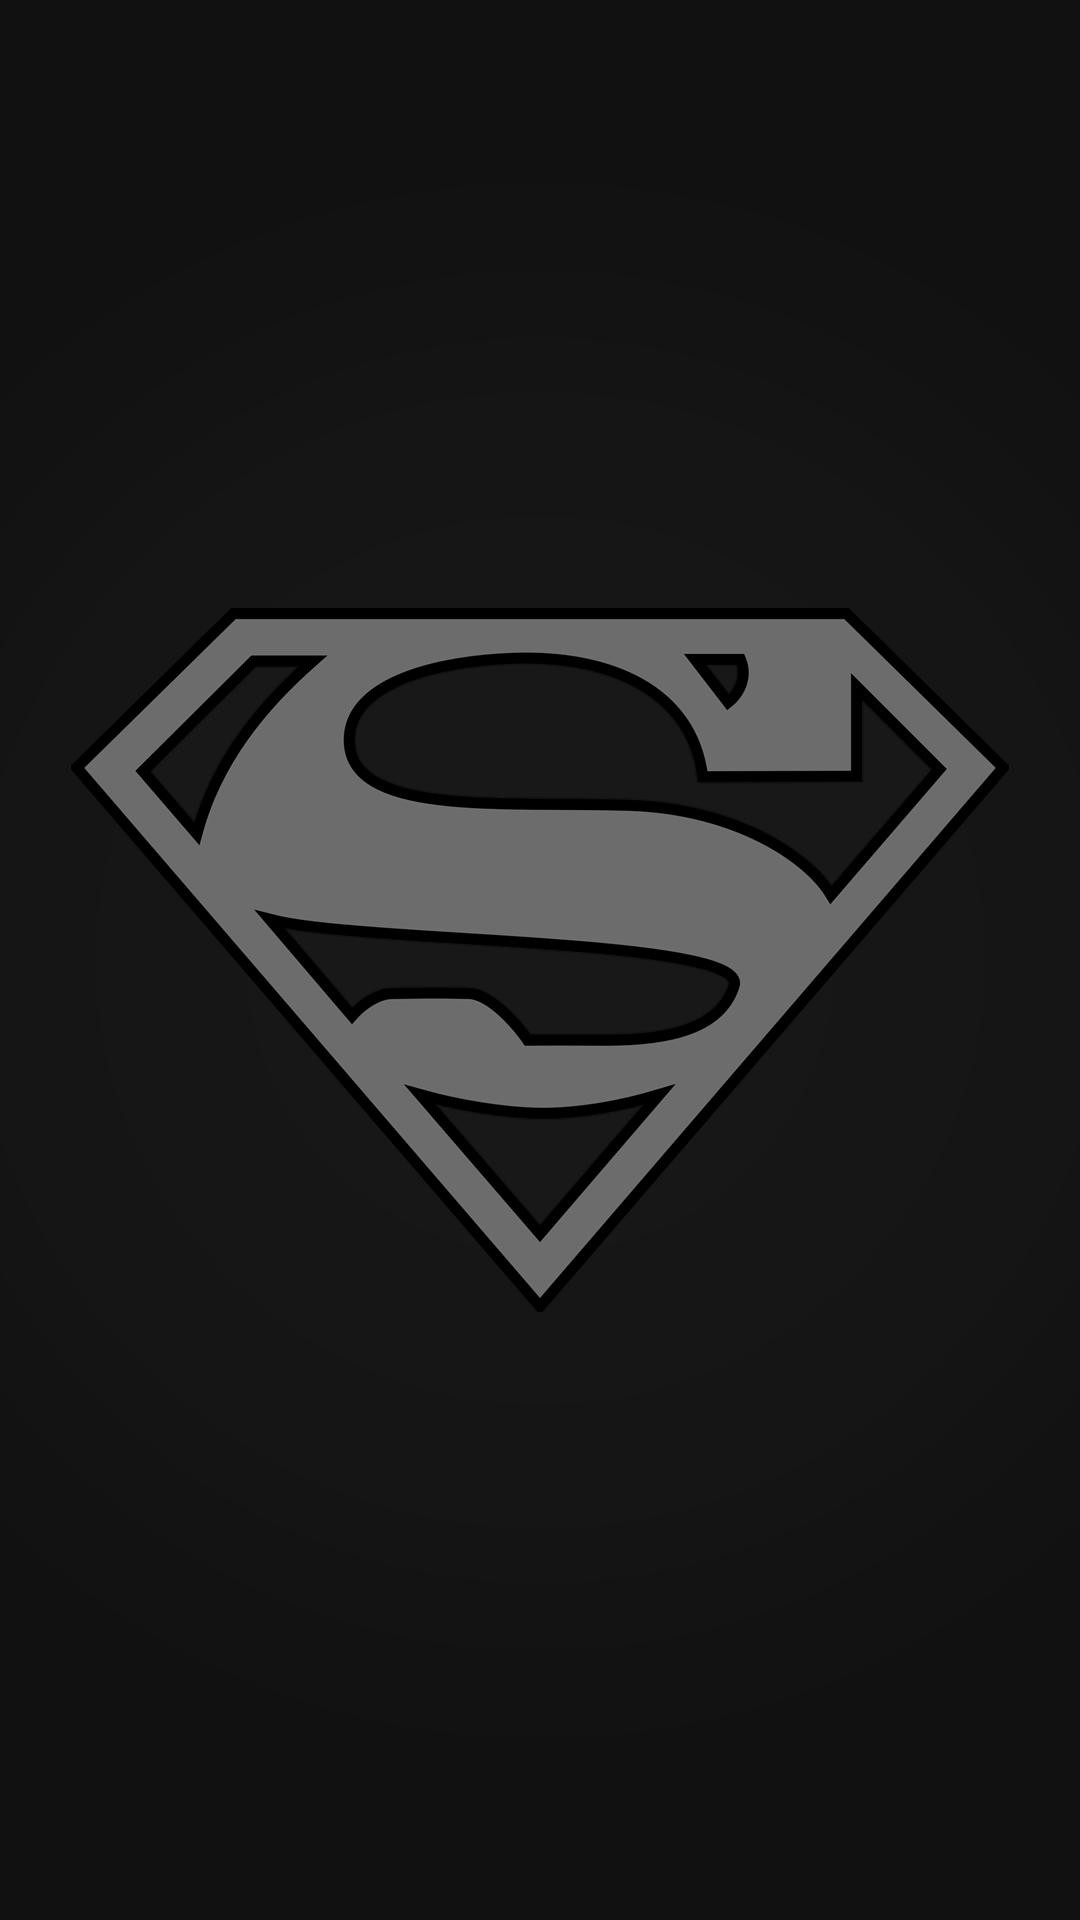 superman sfondi per iphone,superuomo,personaggio fittizio,lega della giustizia,supereroe,font